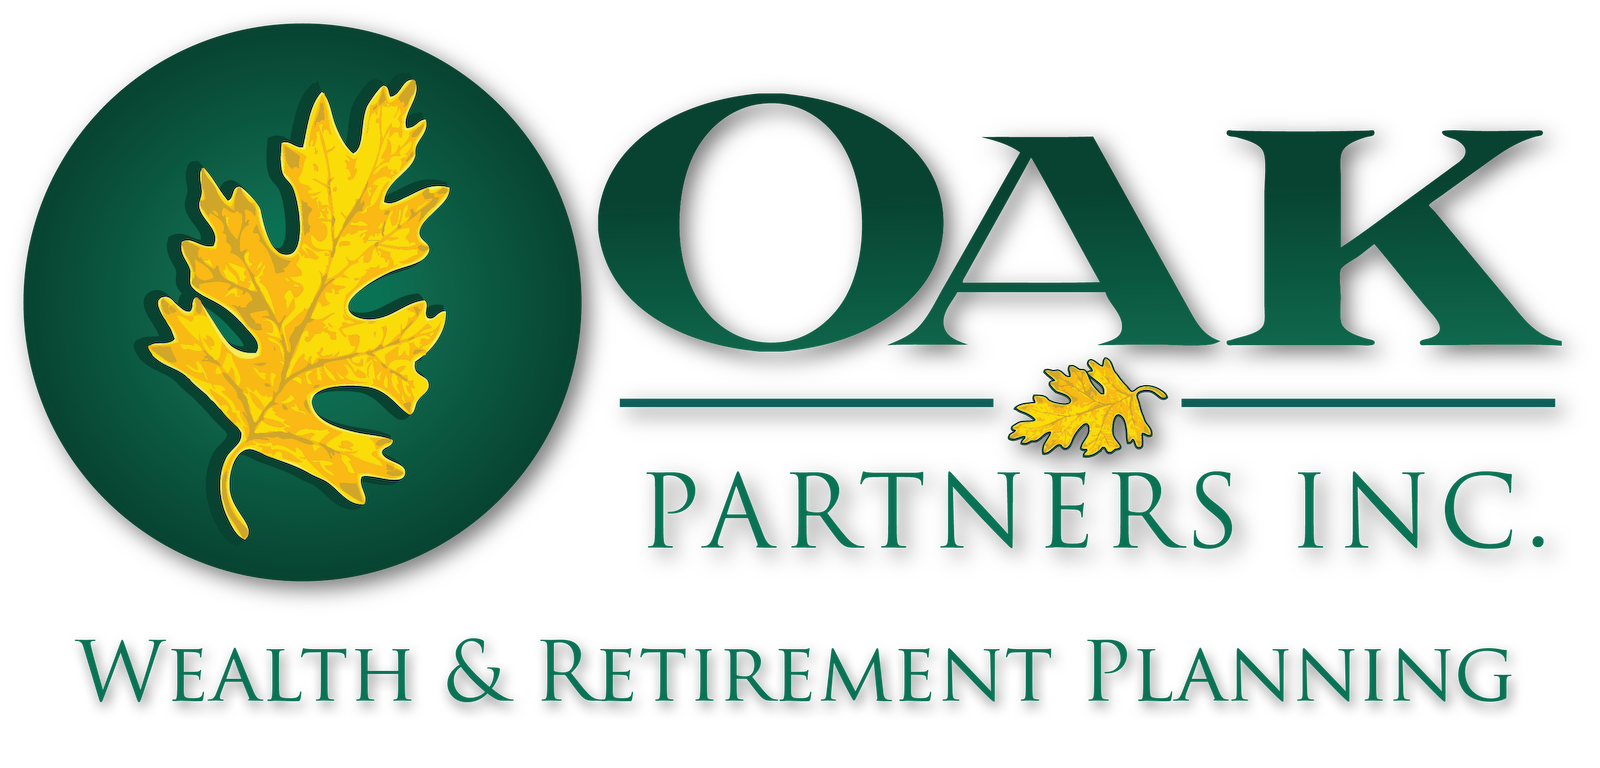 Oak Partners